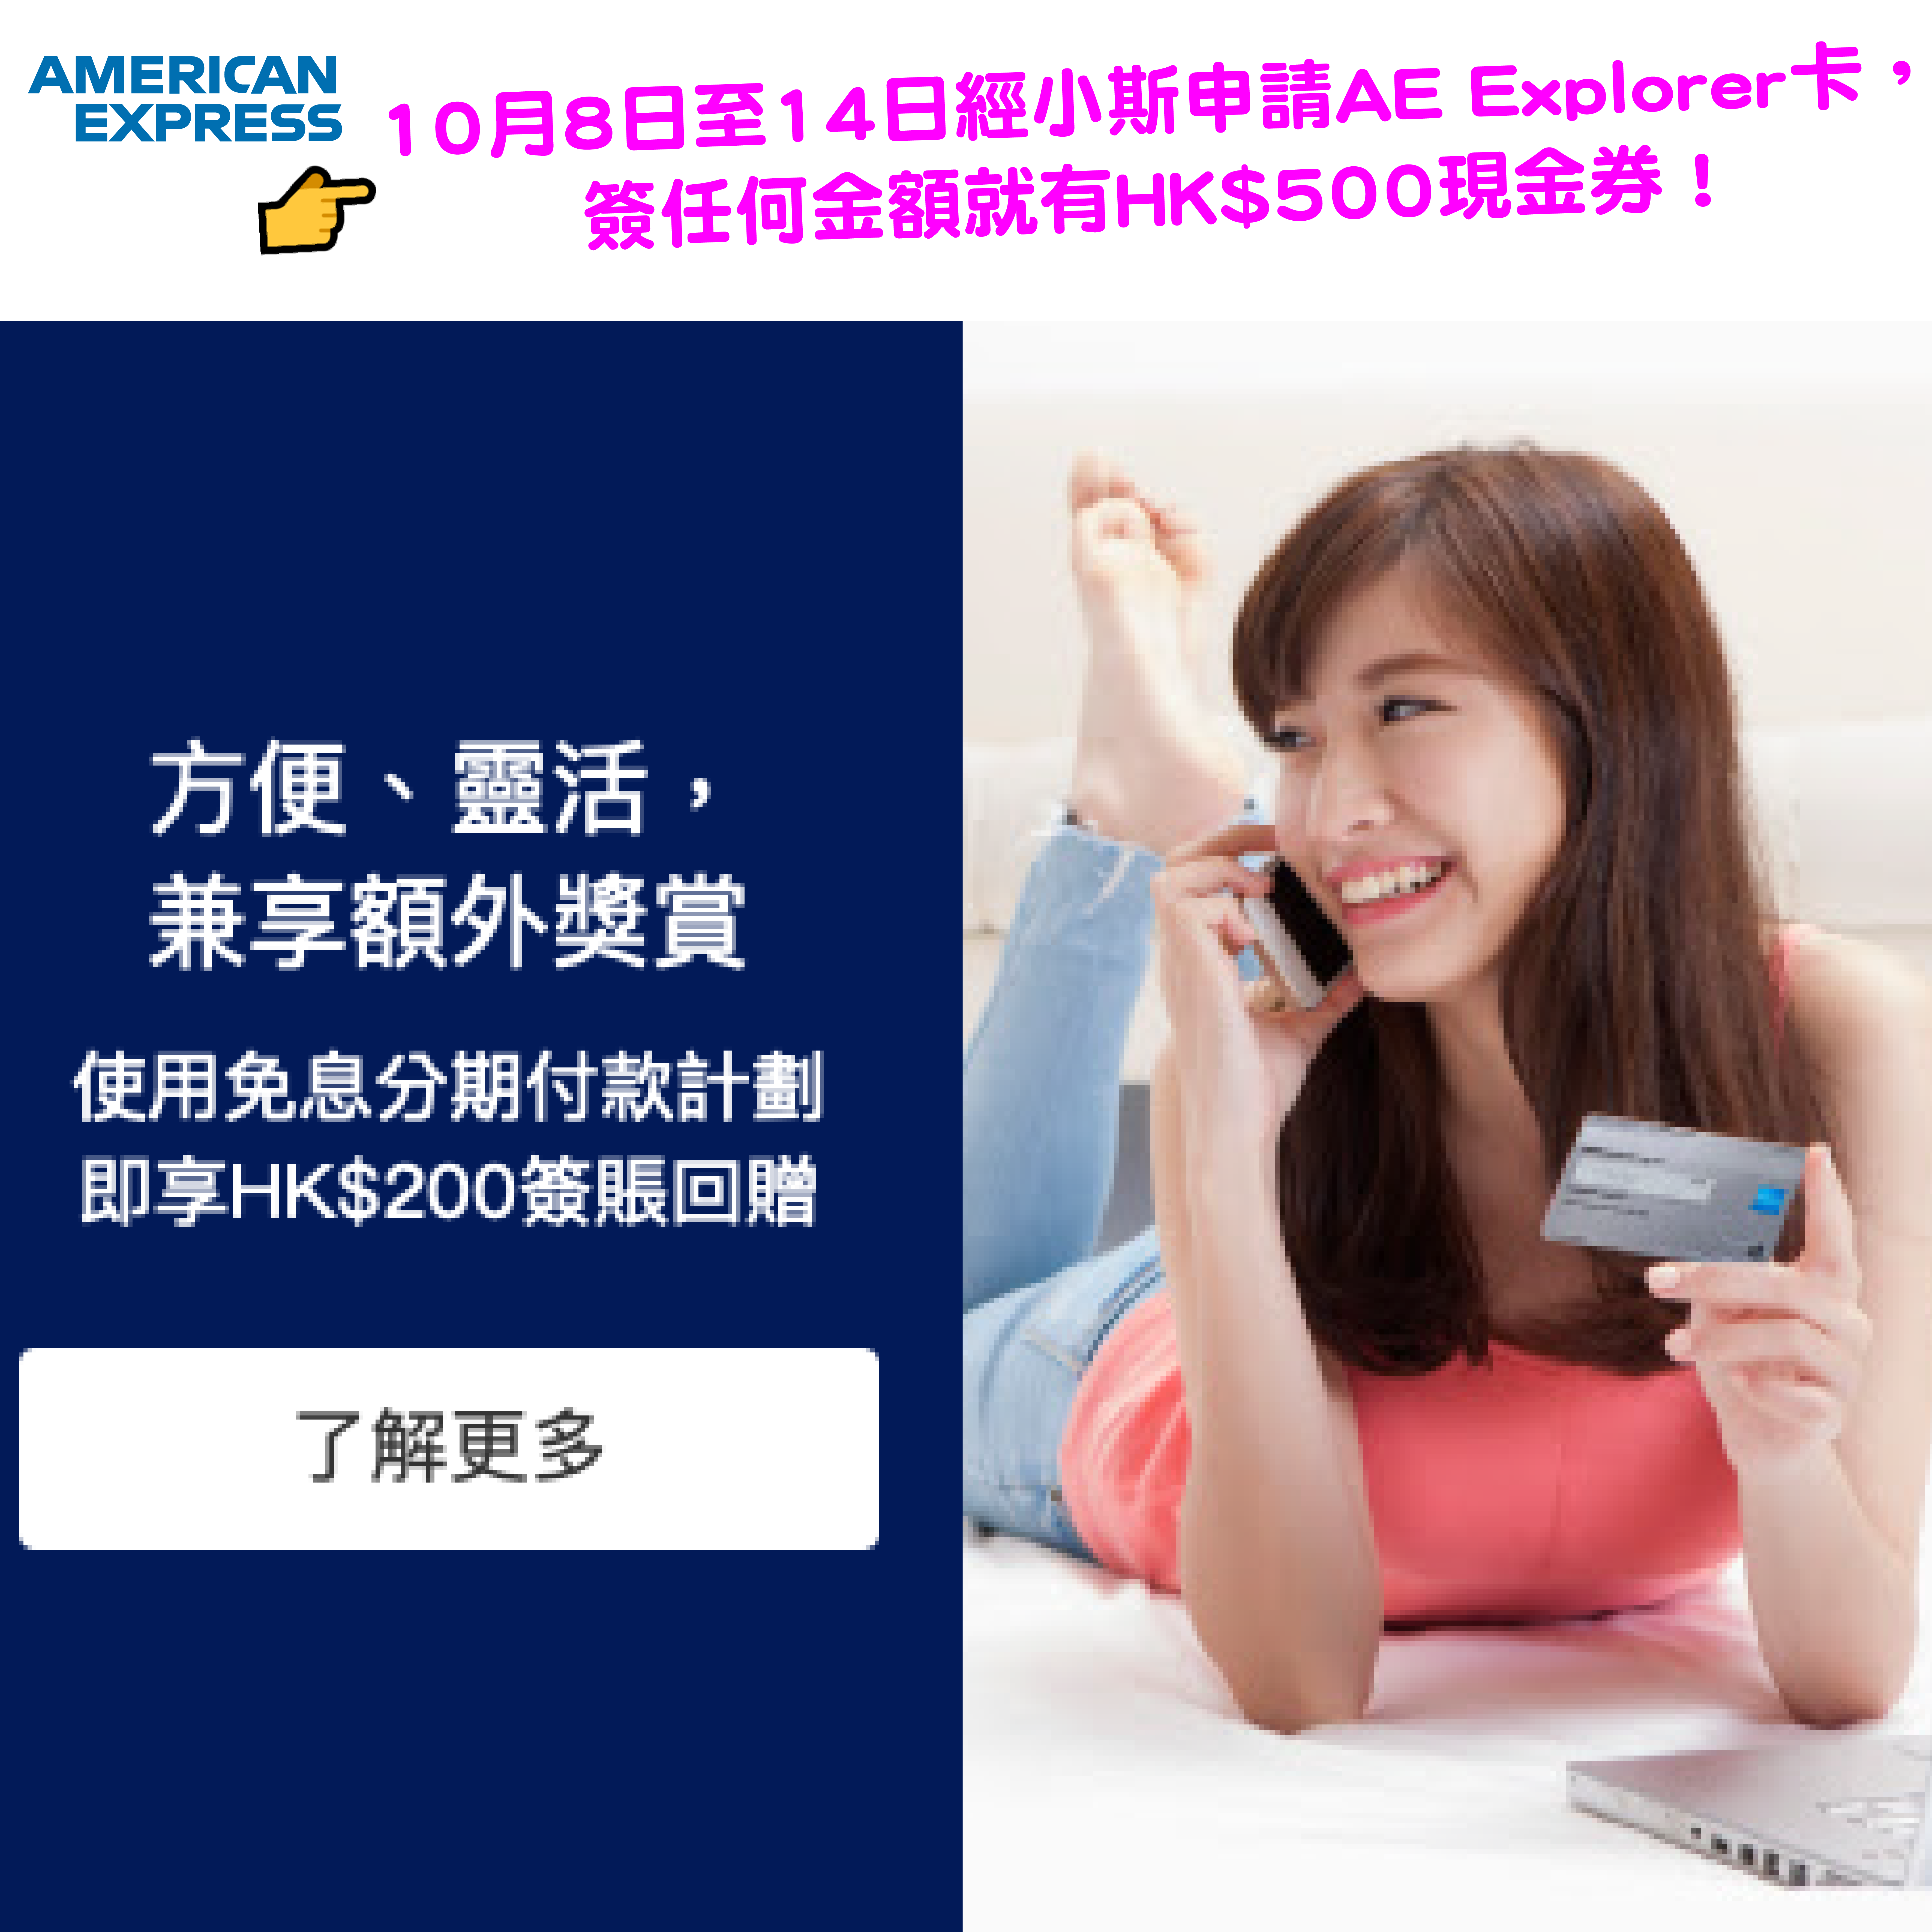 AE信用卡免息分期付款優惠！高達HK$200簽賬回贈！於指定商戶單一消費滿$2,000或以上，即可享免息分期付款及$200簽賬回贈！